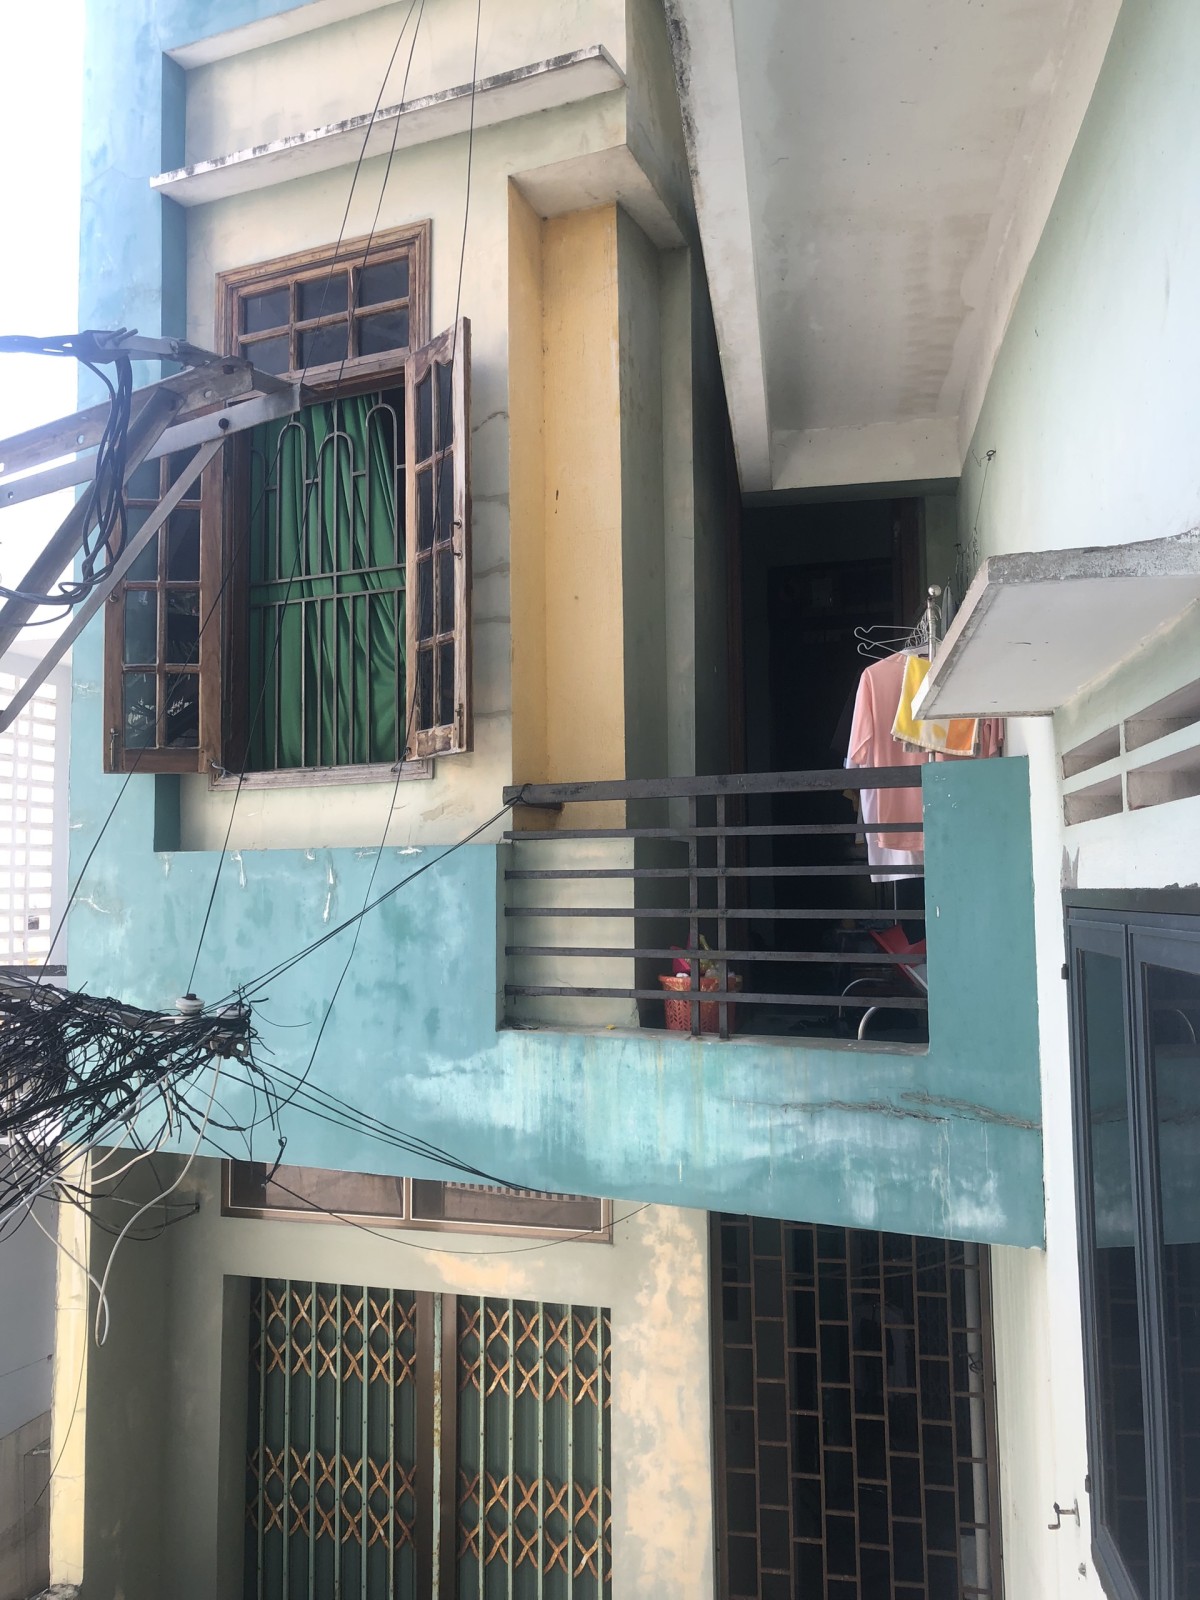 Nhà trọ Sạch và An toàn cho sinh viên nữ tại Quy Nhơn.